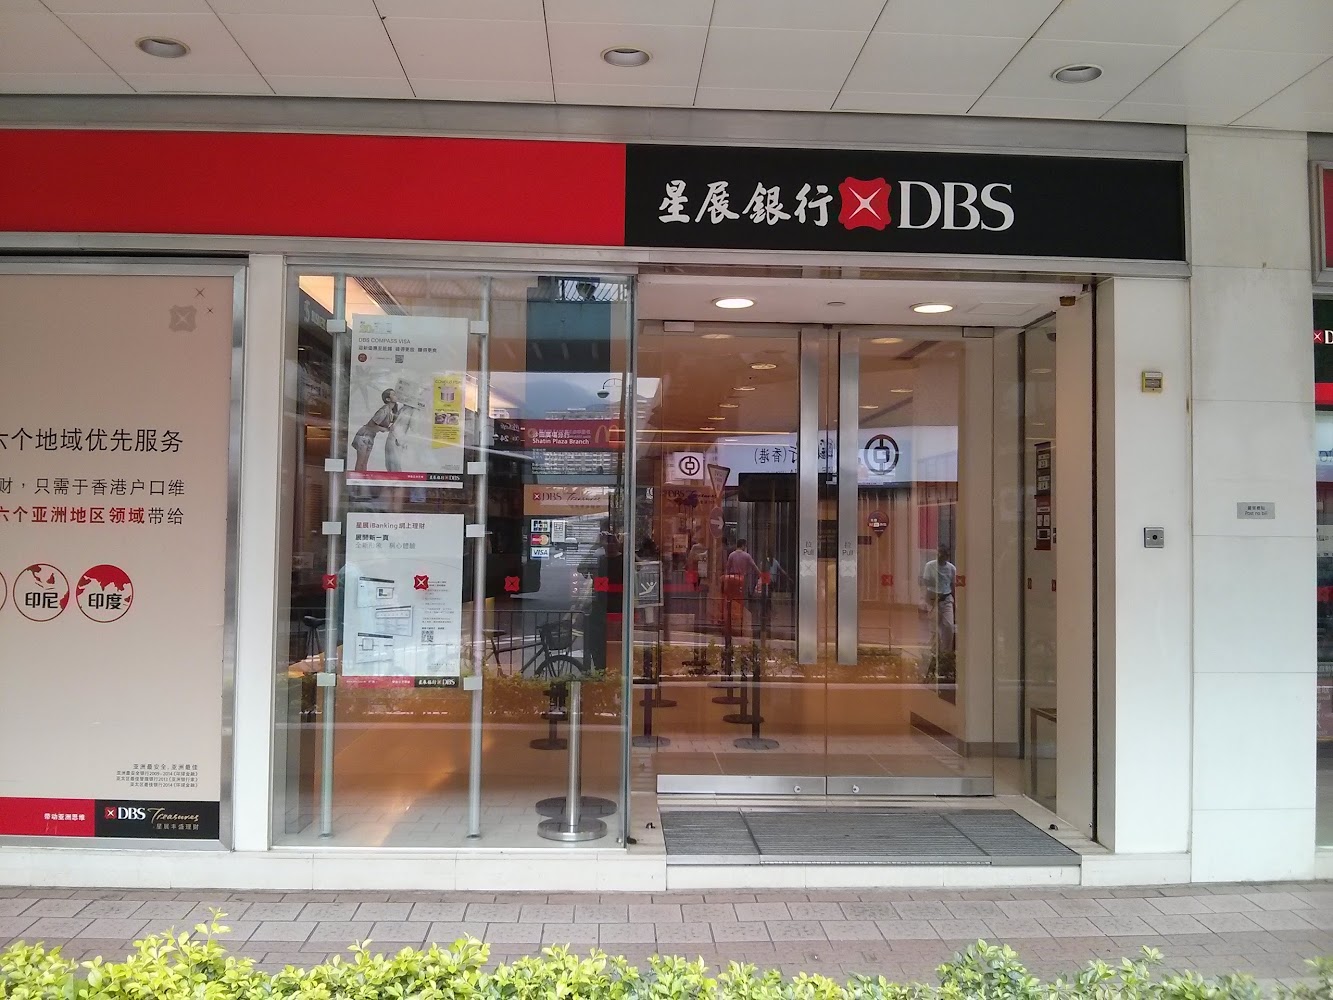 星展銀行 (香港) 沙田廣場分行 DBS Bank (Hong Kong) - Shatin Plaza Branch